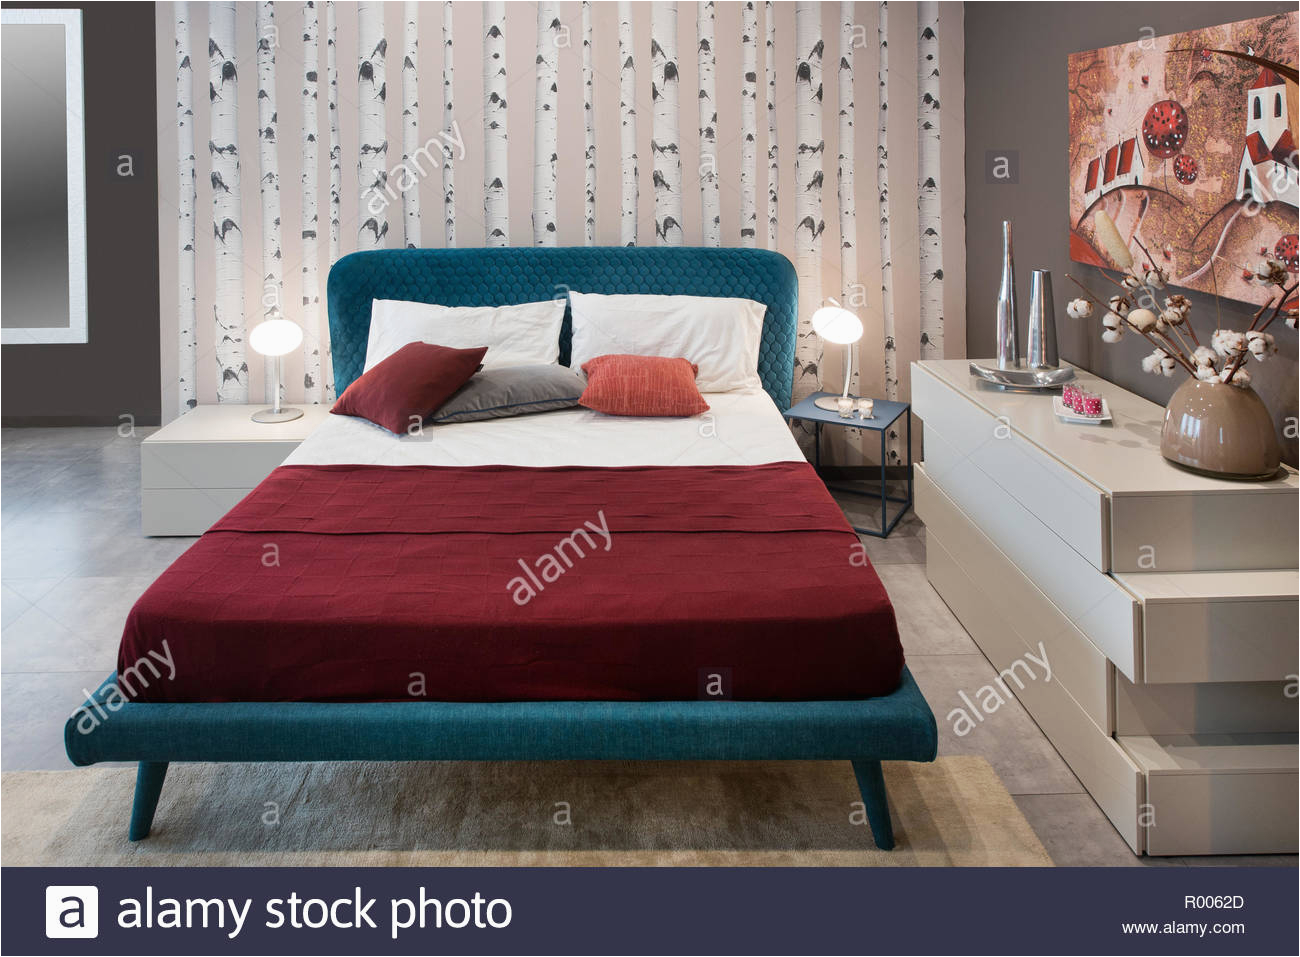 konzept der schlafzimmer design mit vintage blau bett birke natur baume dekoration und stilvolle mobel r0062d